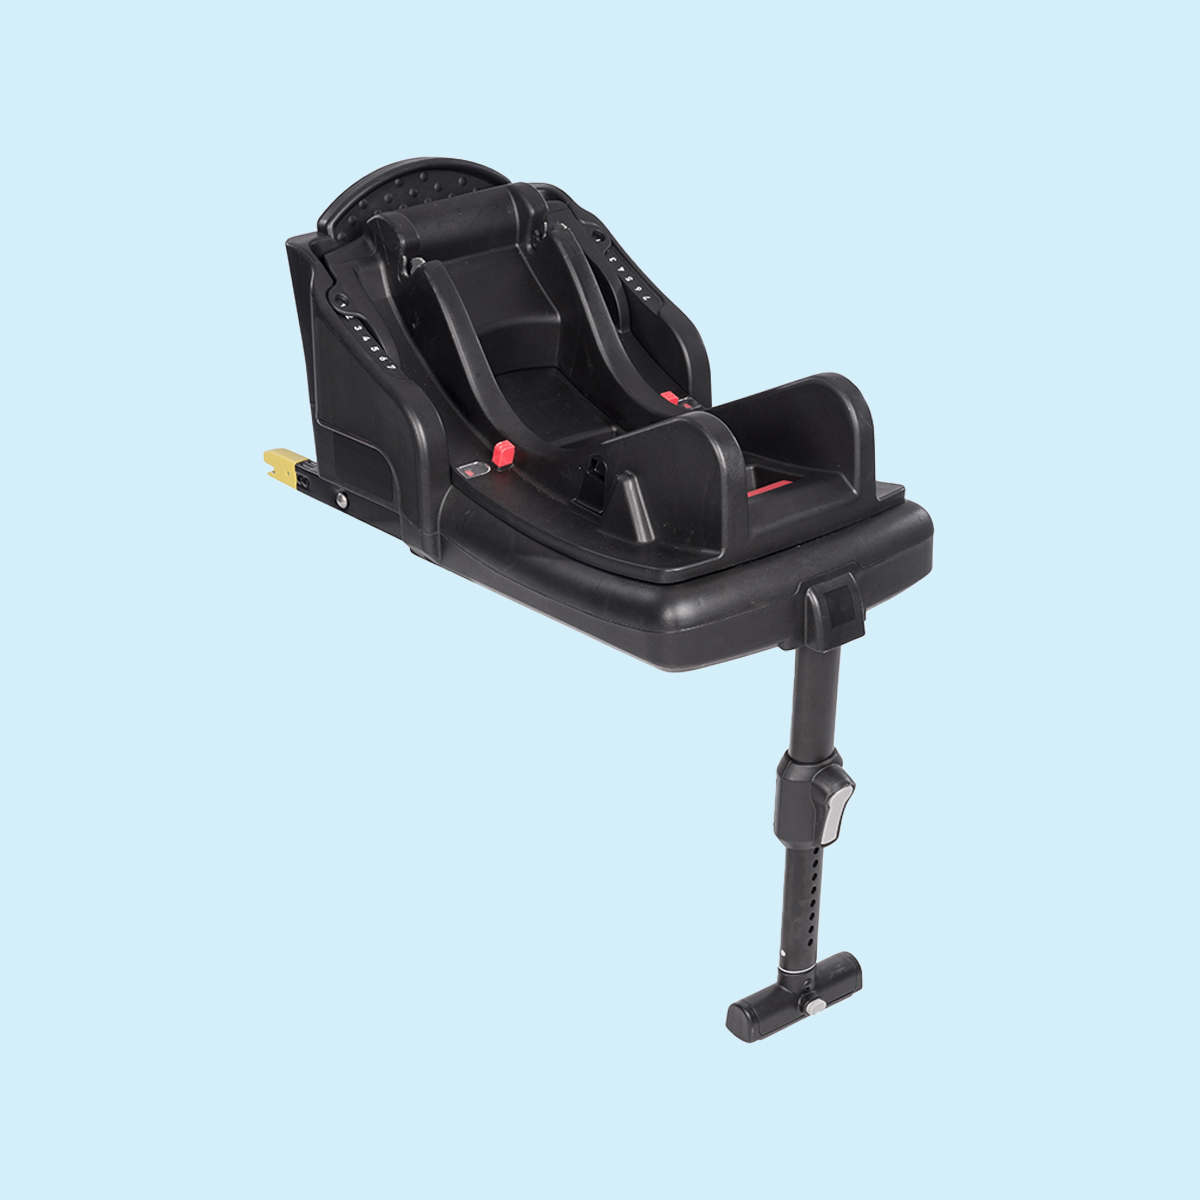 Plano de tres cuartos de la base para silla de coche Graco® SnugRide® i-Size R129 con pata de apoyo multiposición y 7 posiciones de reclinado sobre fondo azul
